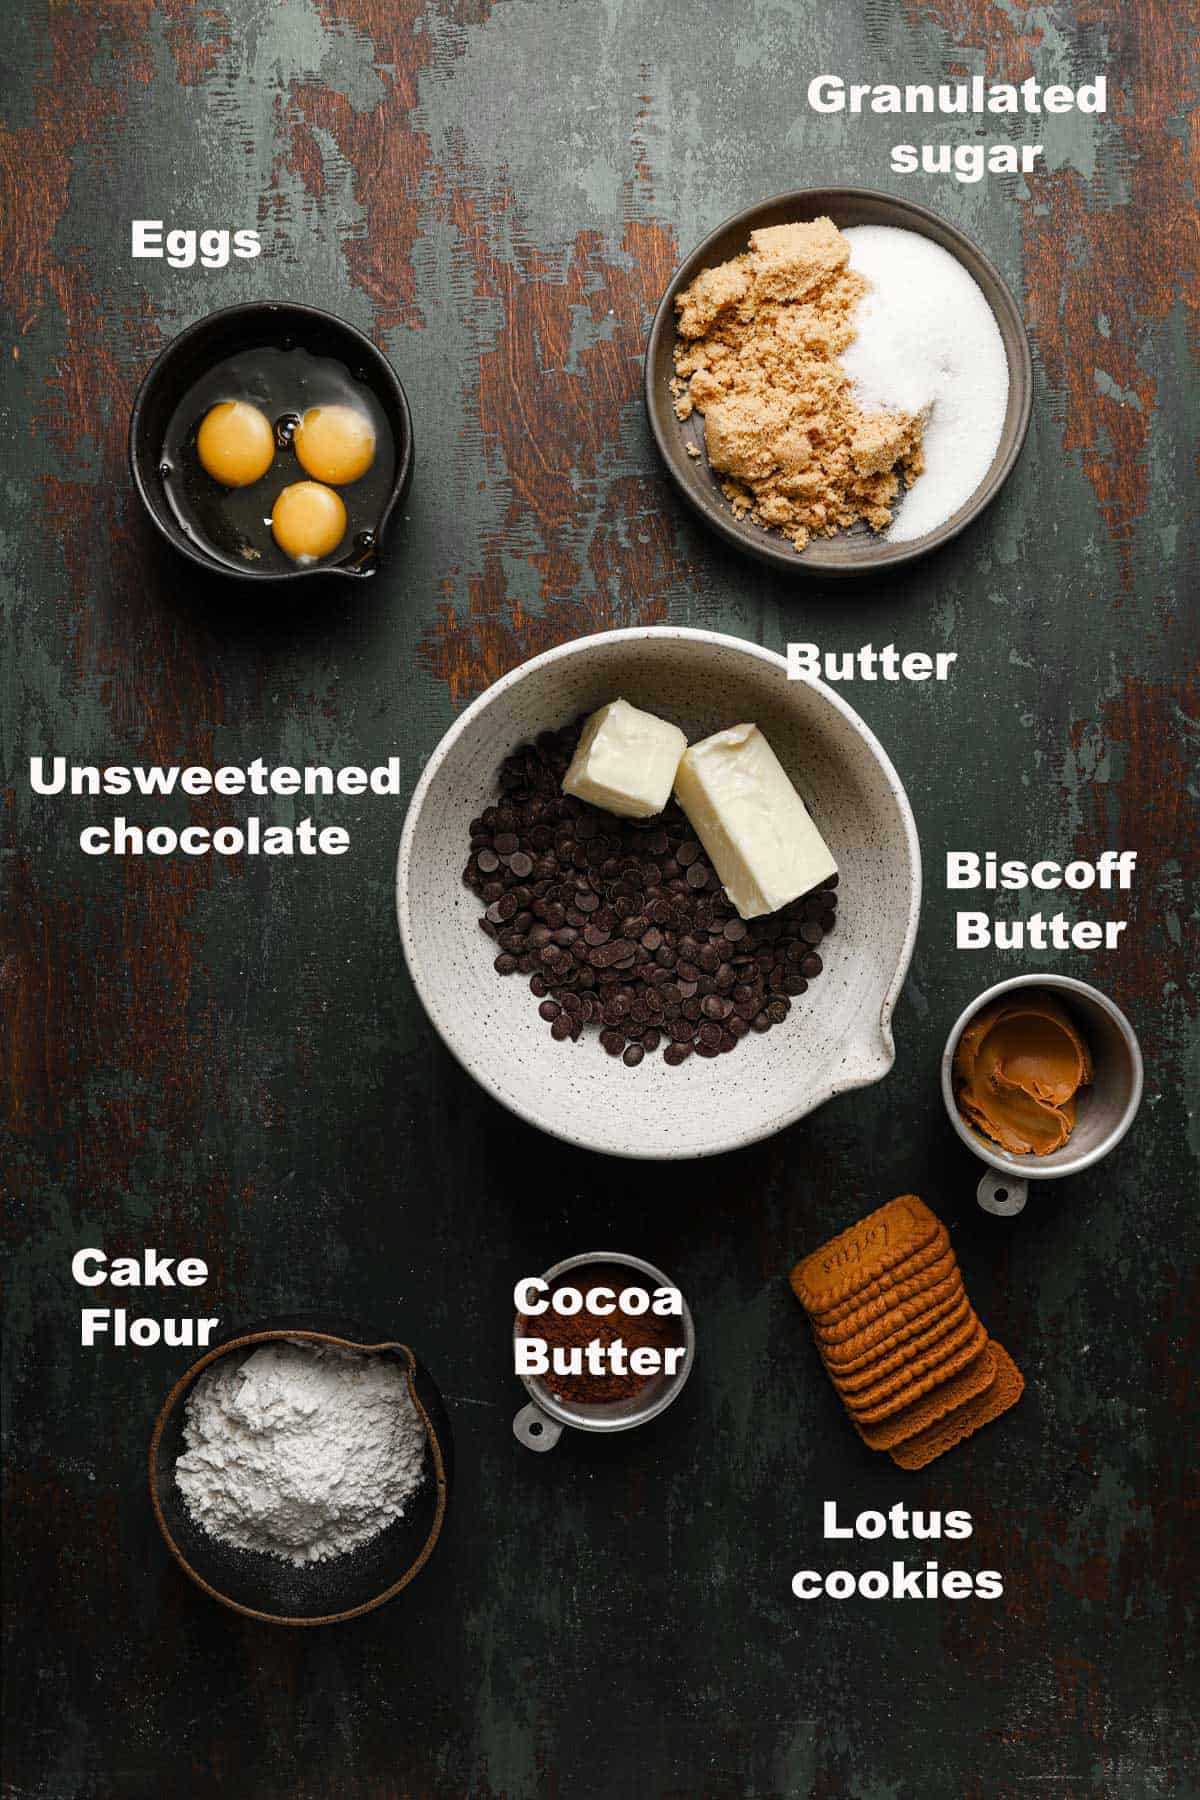 Ingredients to make chocolate lotus bars